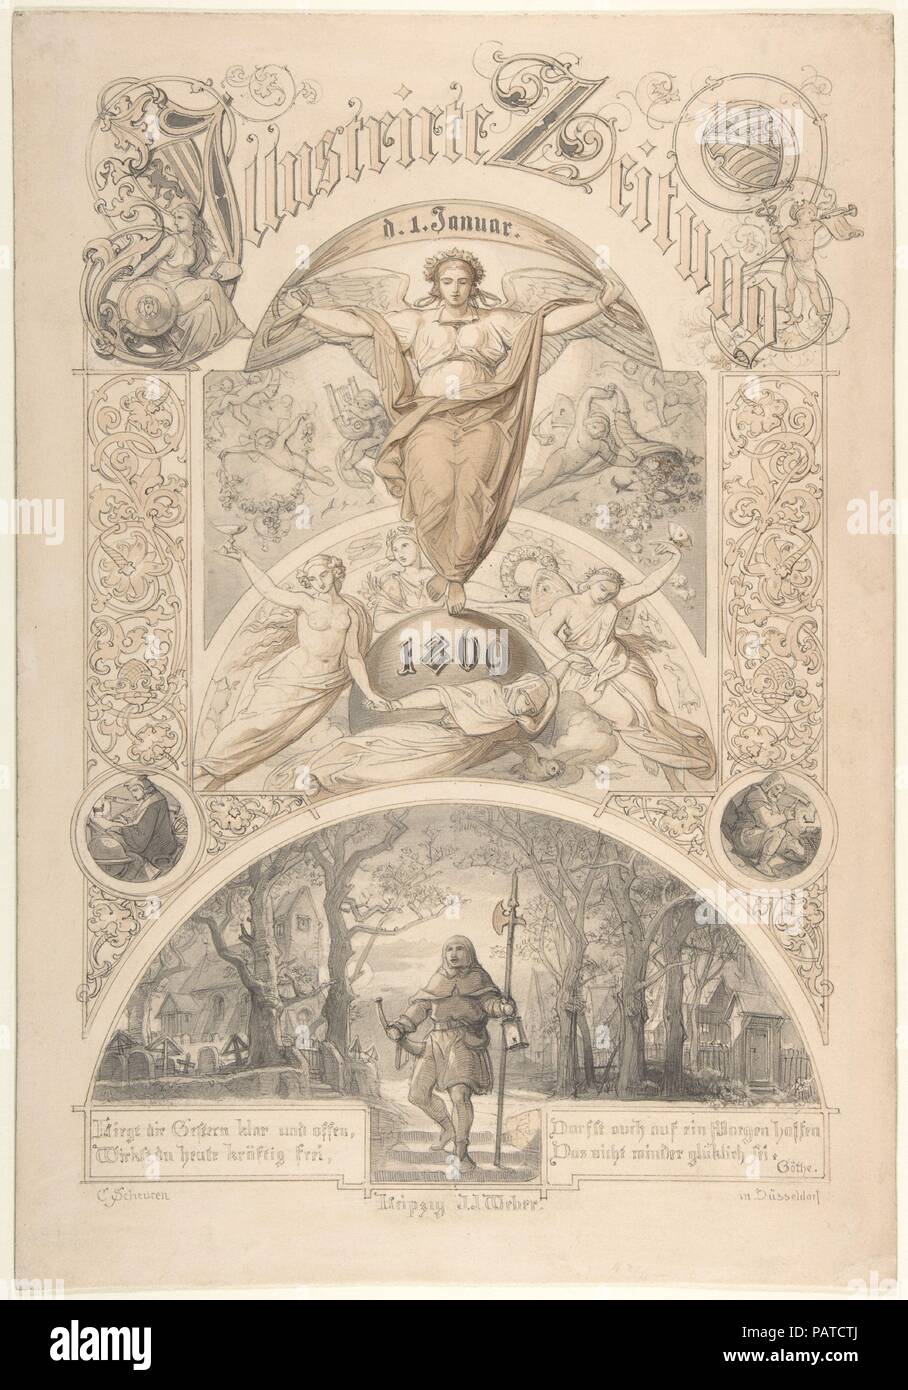 Cover design for the 'Illustrirte Zeitung'. Artist: Johann Caspar Nepomuk Scheuren (German, Aachen 1810-1887 Düsseldorf). Dimensions: sheet: 15 13/16 x 10 7/8 in. (40.1 x 27.7 cm). Date: 1820-87. Museum: Metropolitan Museum of Art, New York, USA. Stock Photo